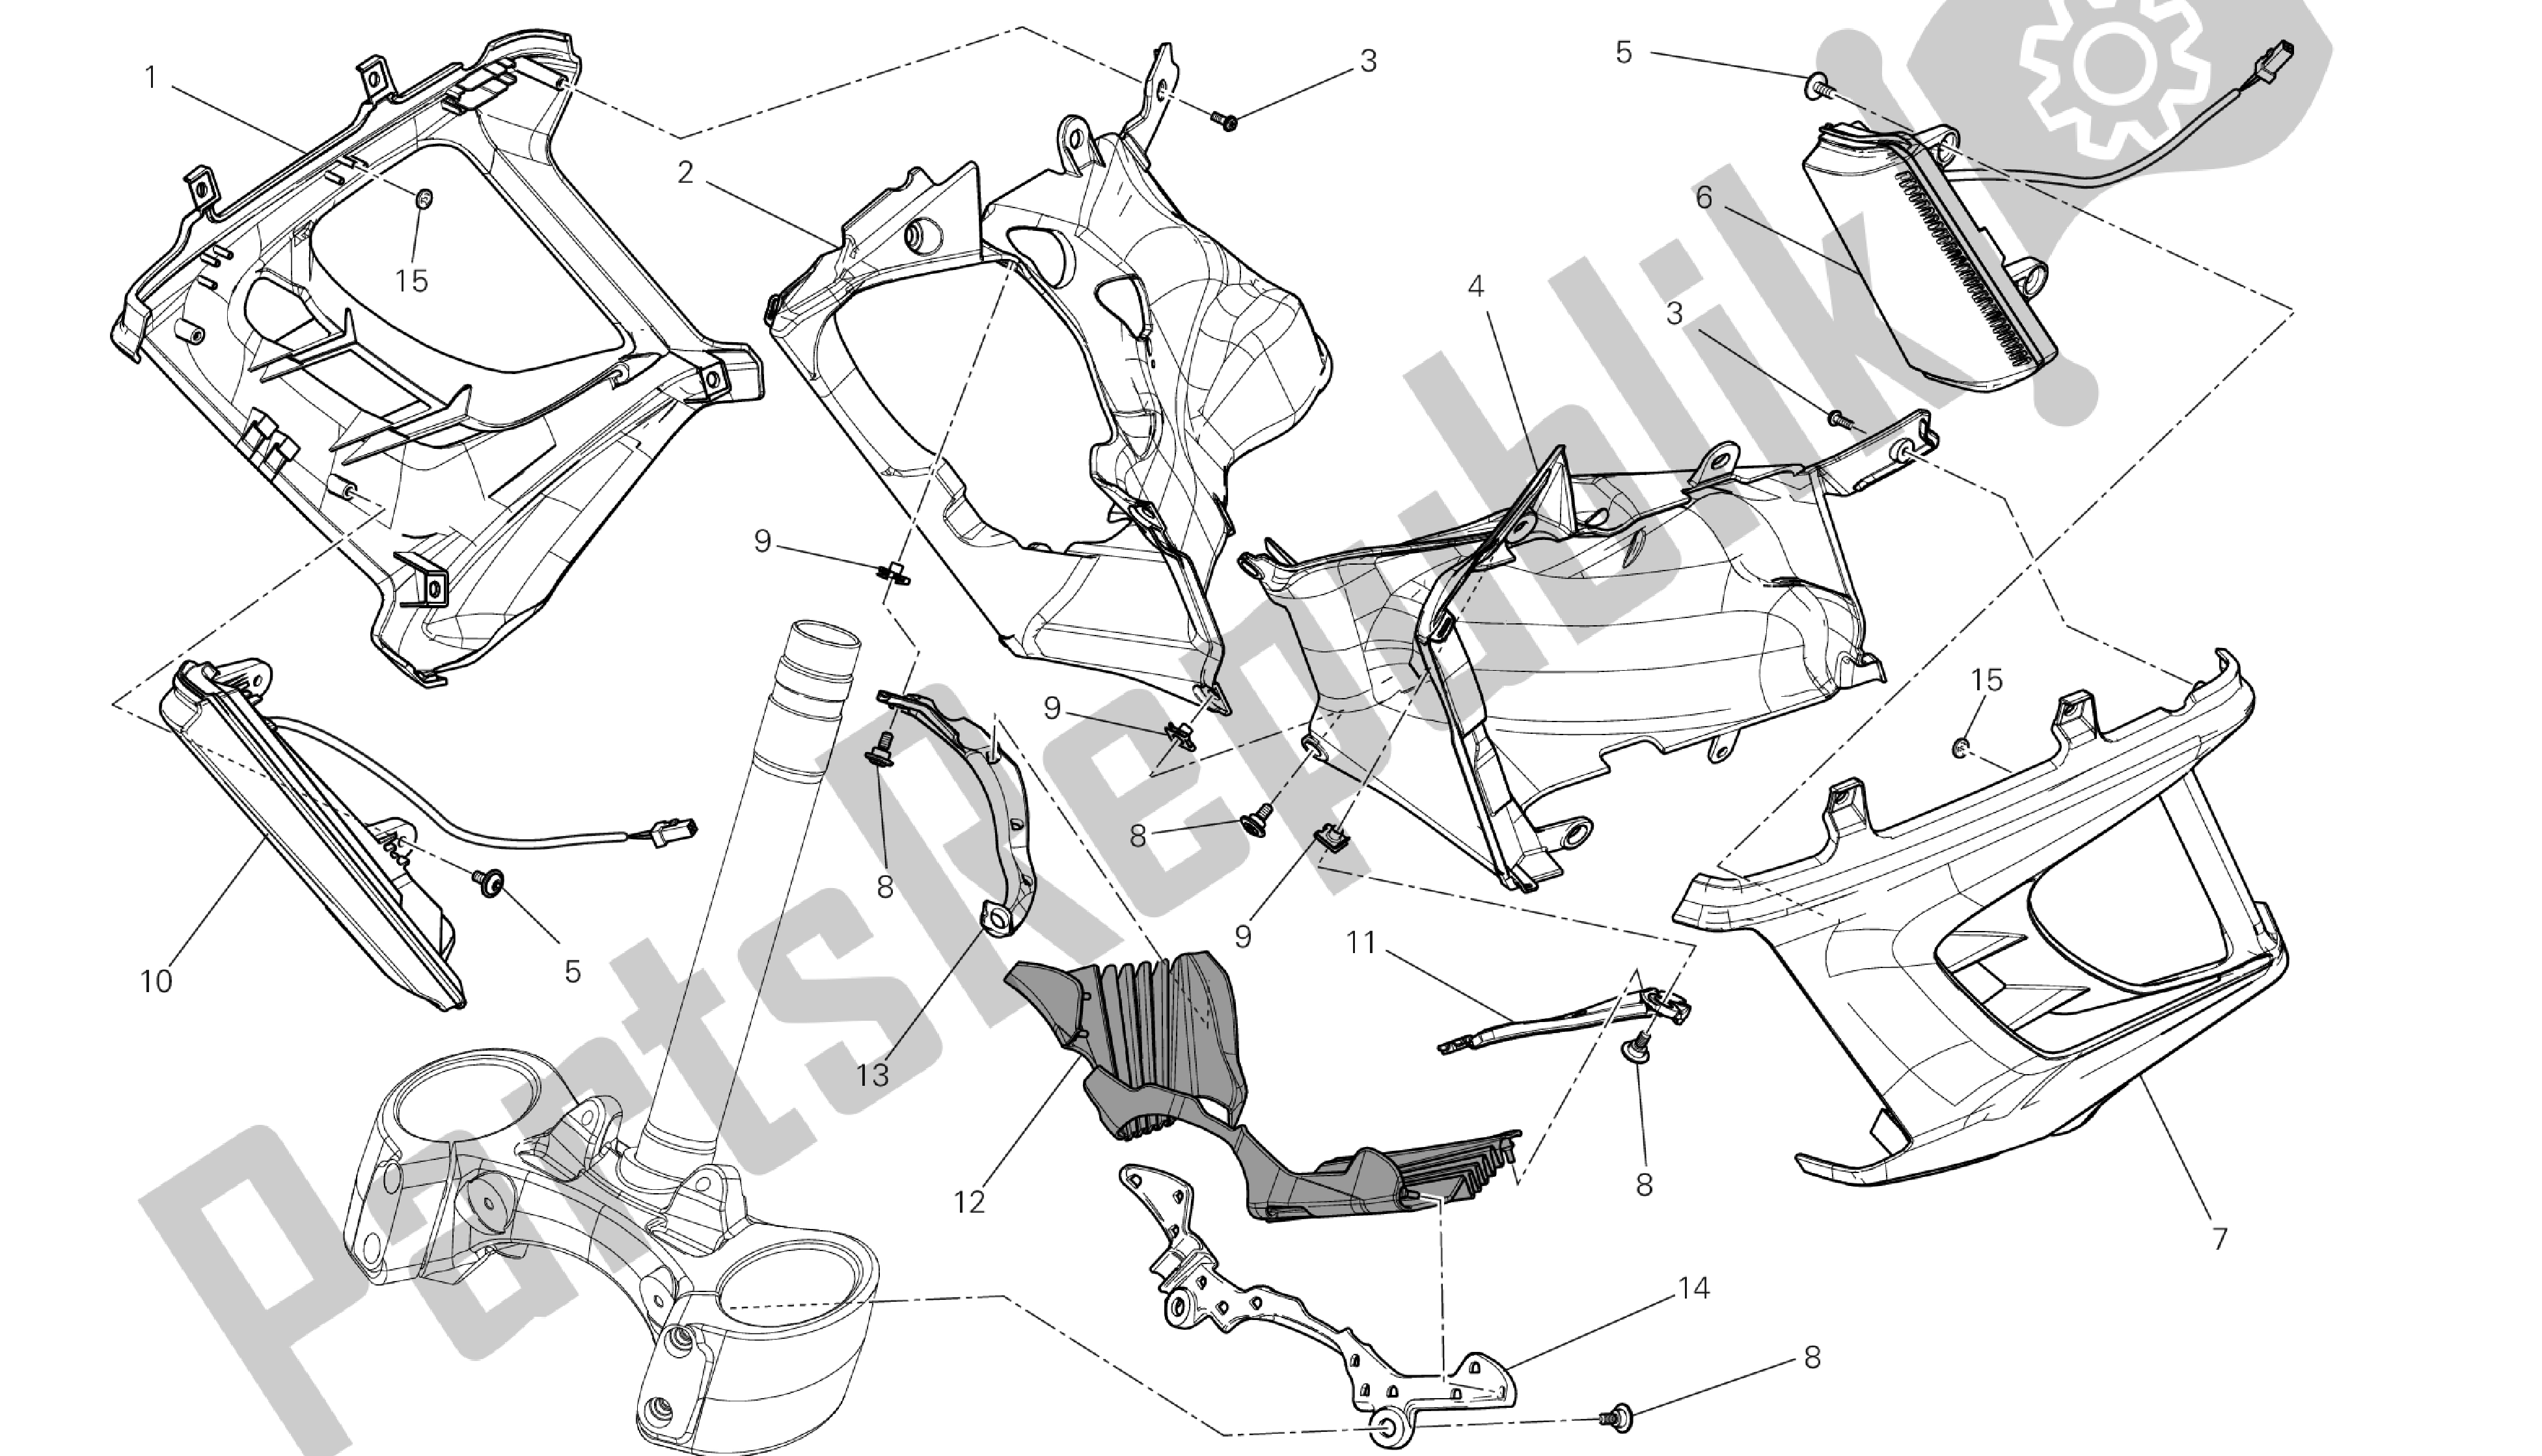 Todas las partes para Dibujo 34a - Cubierta, Radiador [m Od: Dvlc; Xst: Aus, Bra, Chn, Eur, Fra, Jap, Th Ai] Group Fr Ame de Ducati Diavel Carbon 1200 2013